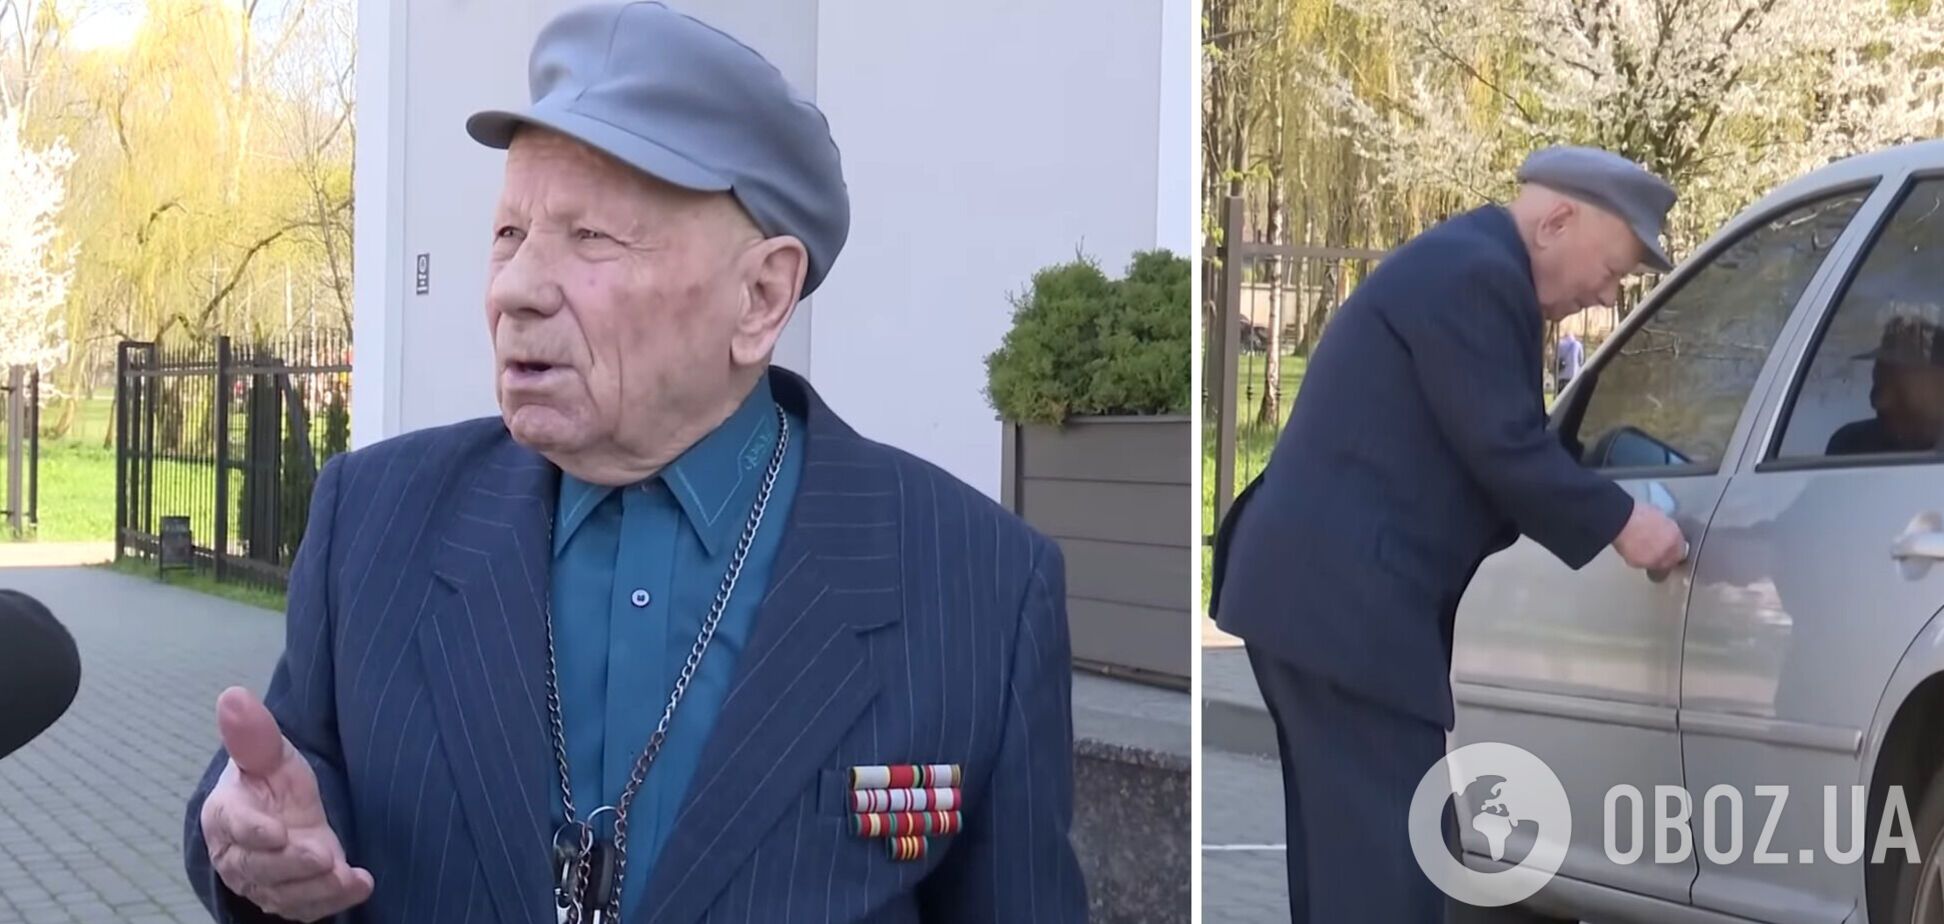 'Вони зробили мені підставу': 91-річний водій з Луцька через суд доводить свою невинуватість у ДТП. Відео